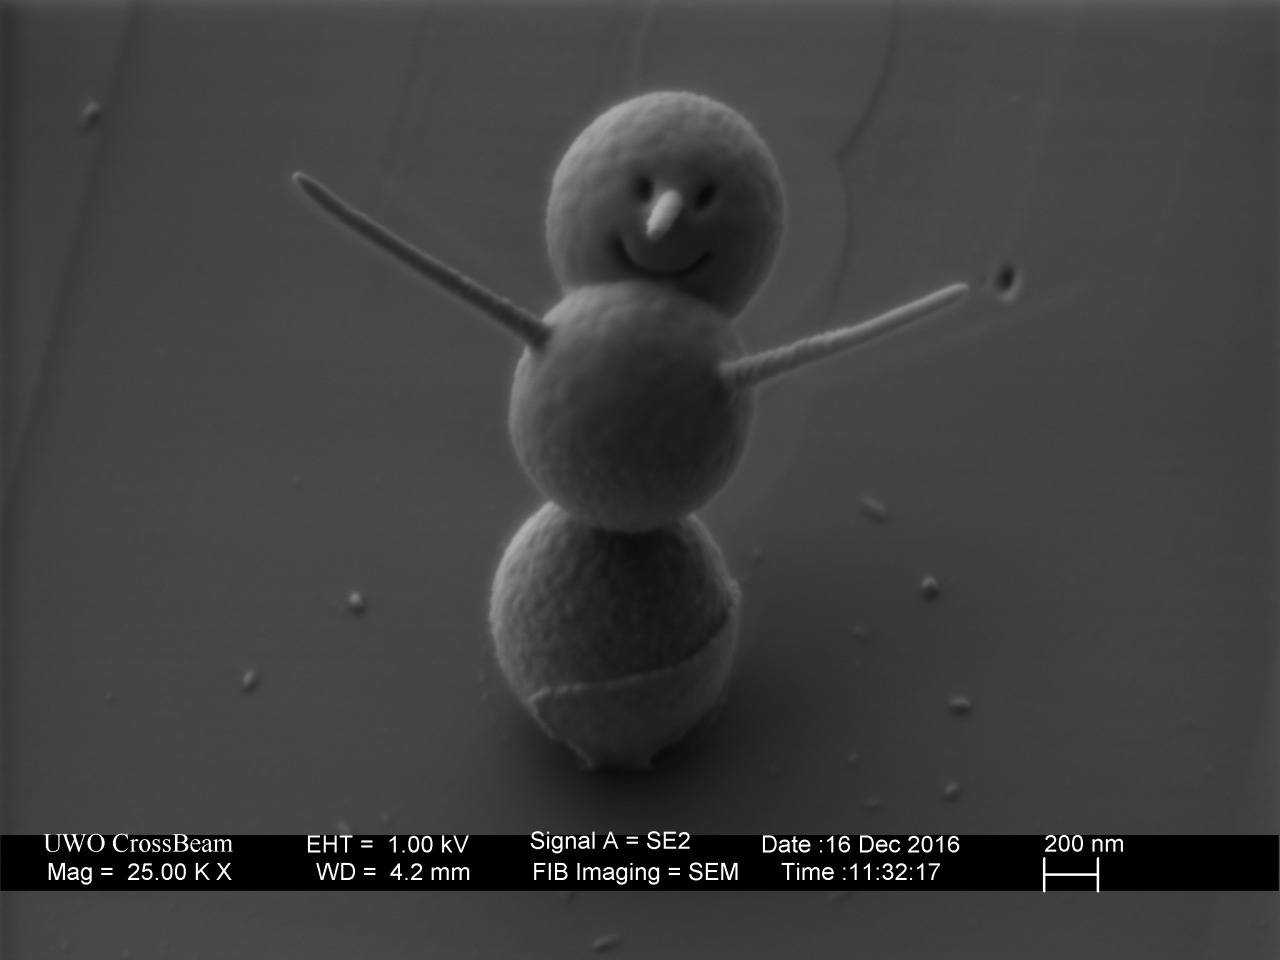 Le plus petit bonhomme de neige mesure 3 microns